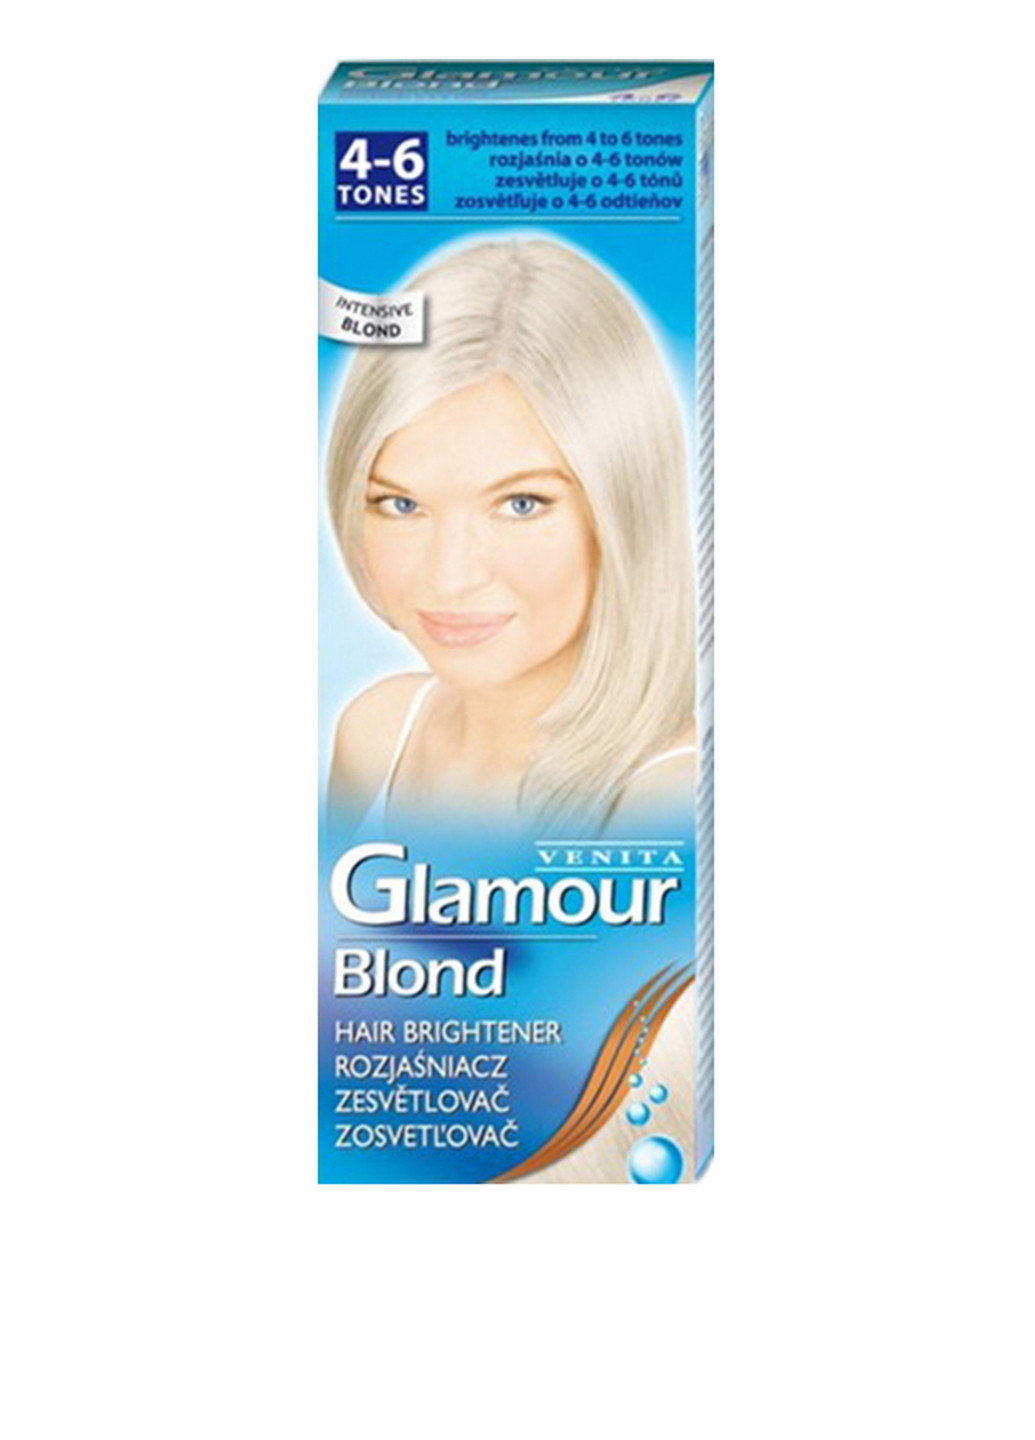 Осветлитель для волос Glamour Blond (2 ед.), 50 г+50 мл Venita (162947650)